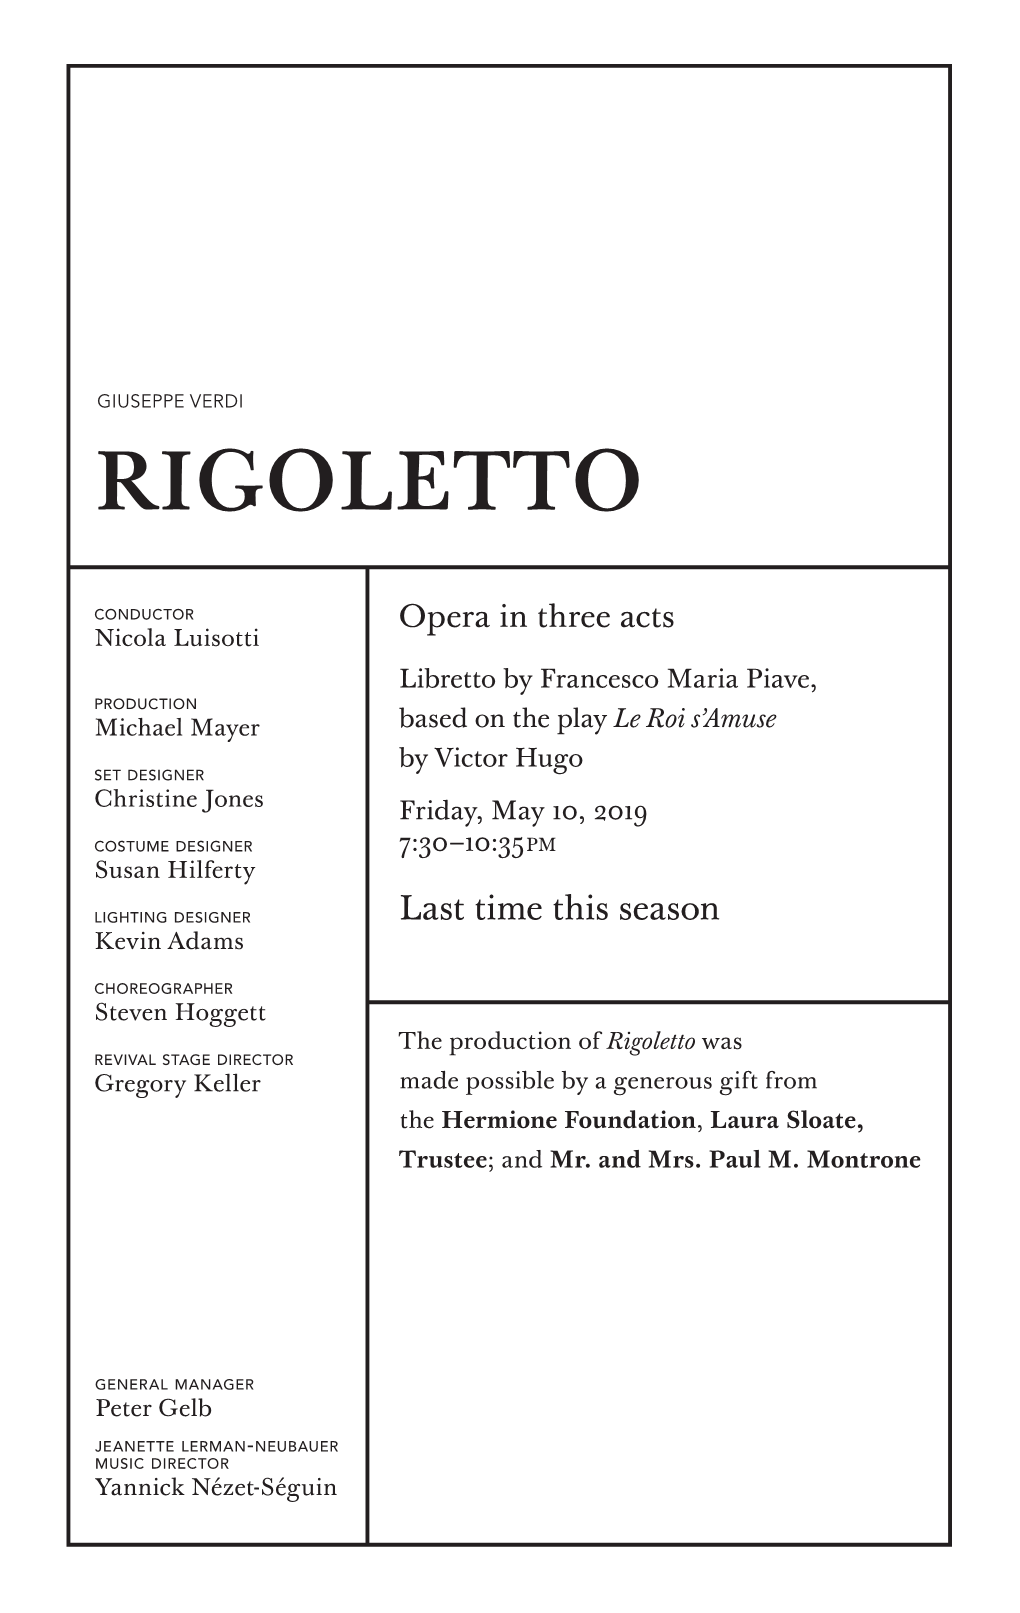 05-10-2019 Rigoletto Eve.Indd